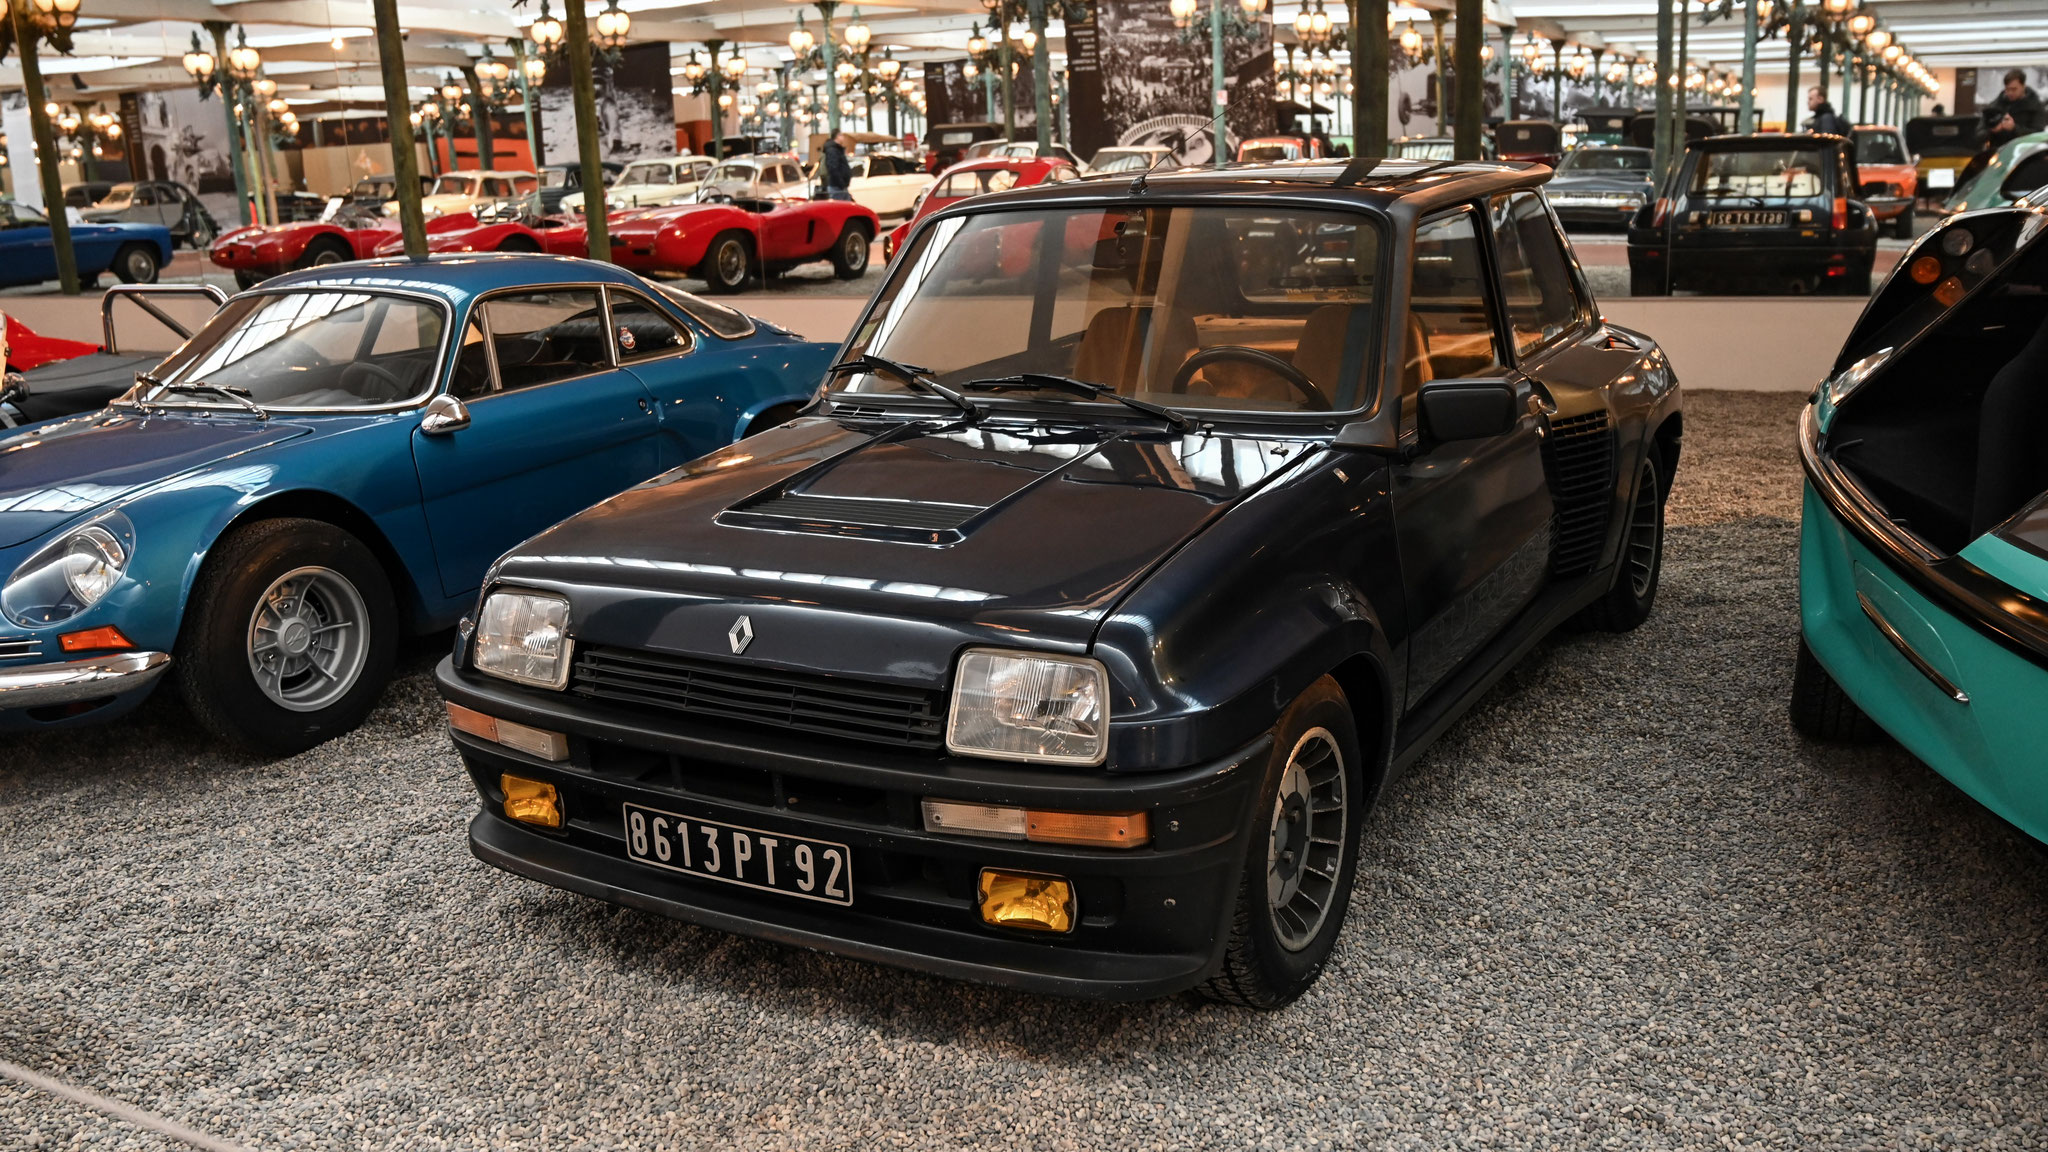 Renault R5 Turbo - 8613PT92 (FRA)